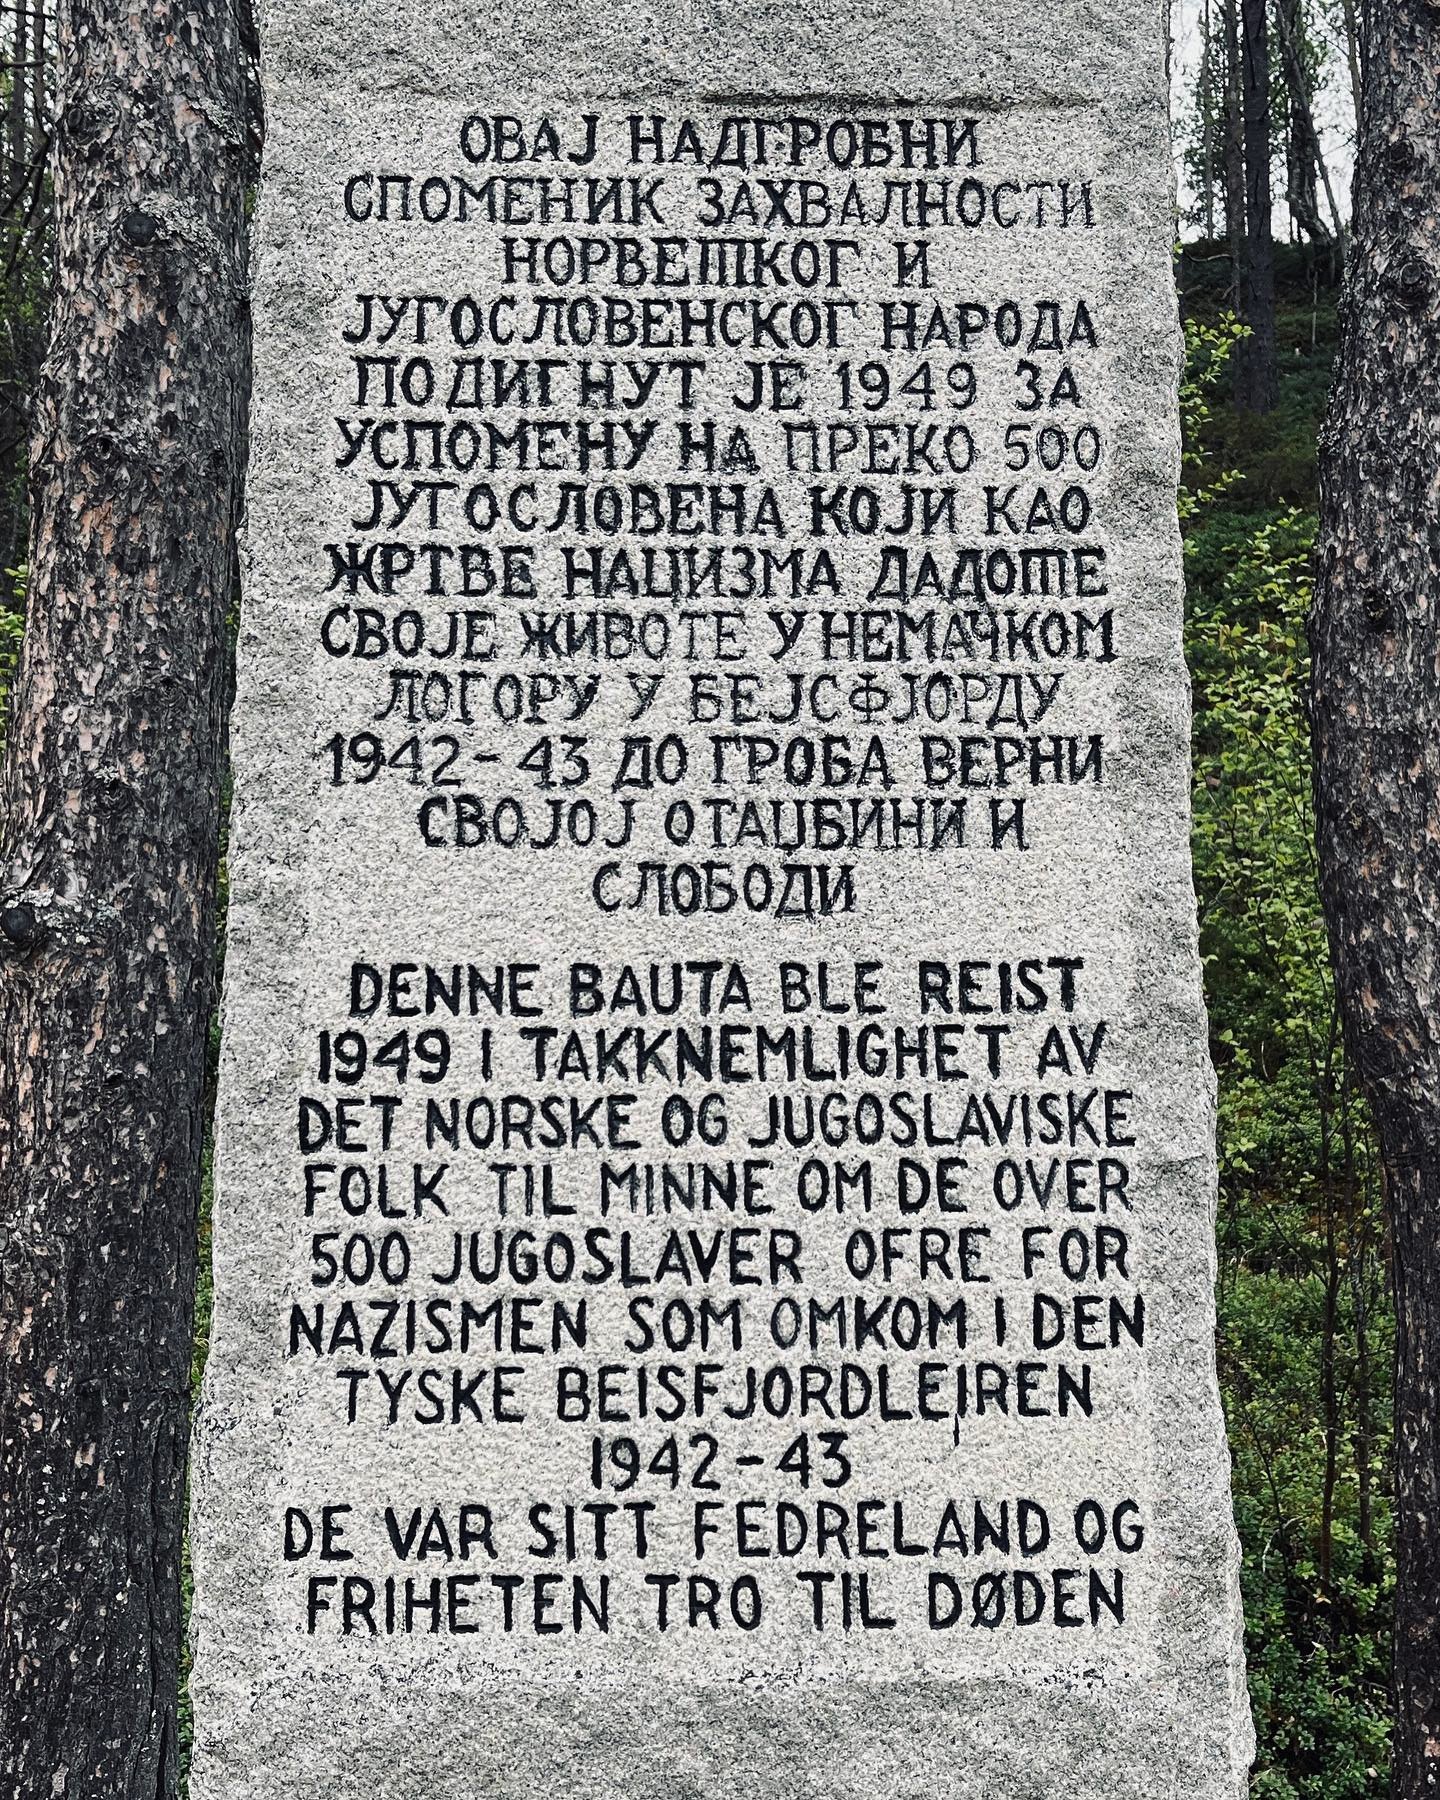 Spomenik u čast jugoslovenskim žrtvama nacizma u Beisfjordu podignut je 1949.